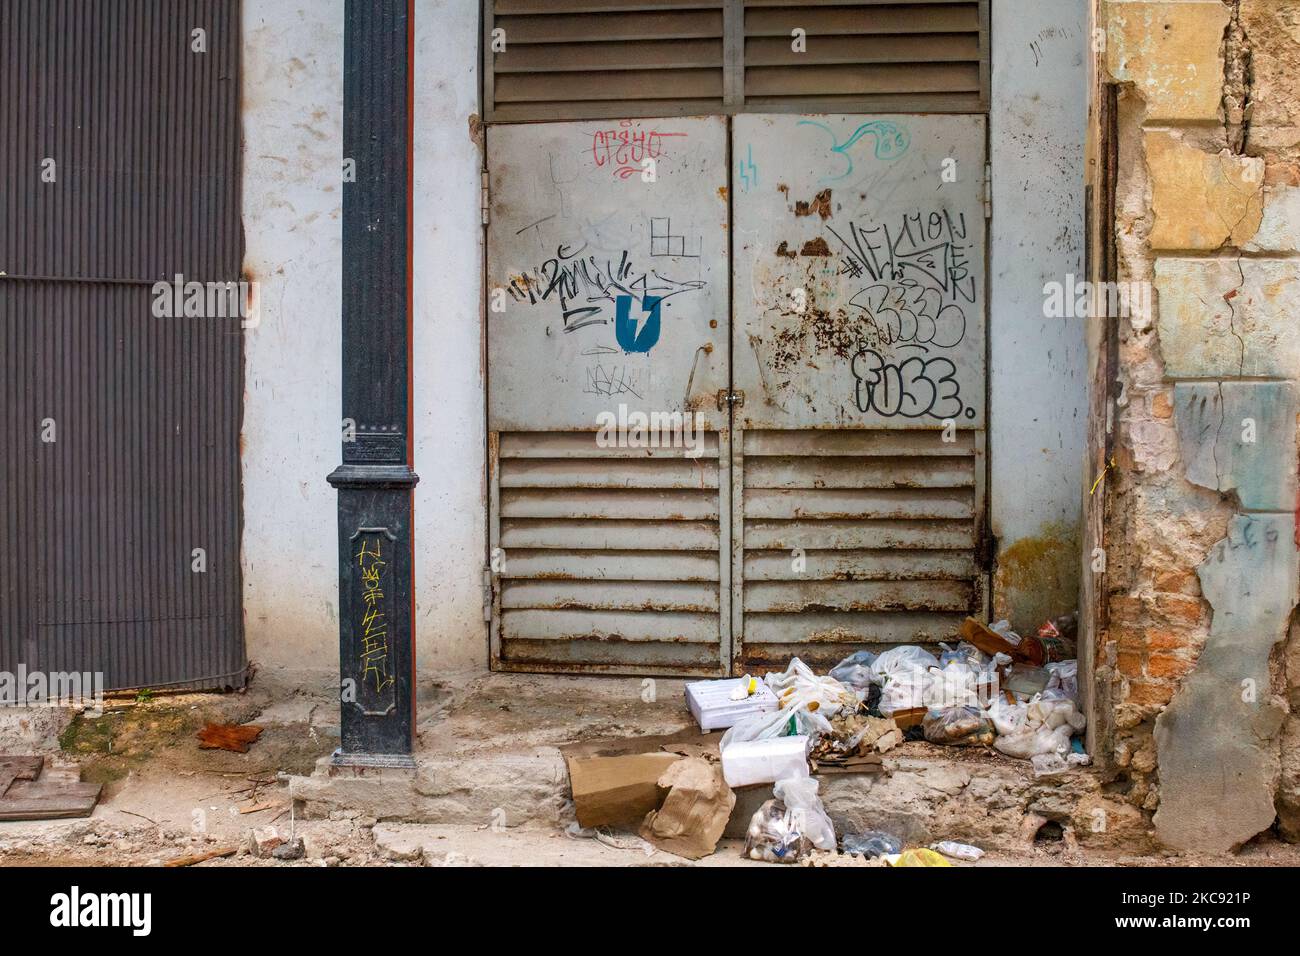 Un montón de basura junto a una puerta metálica marcada con graffiti. Los edificios están ruinosos. Foto de stock